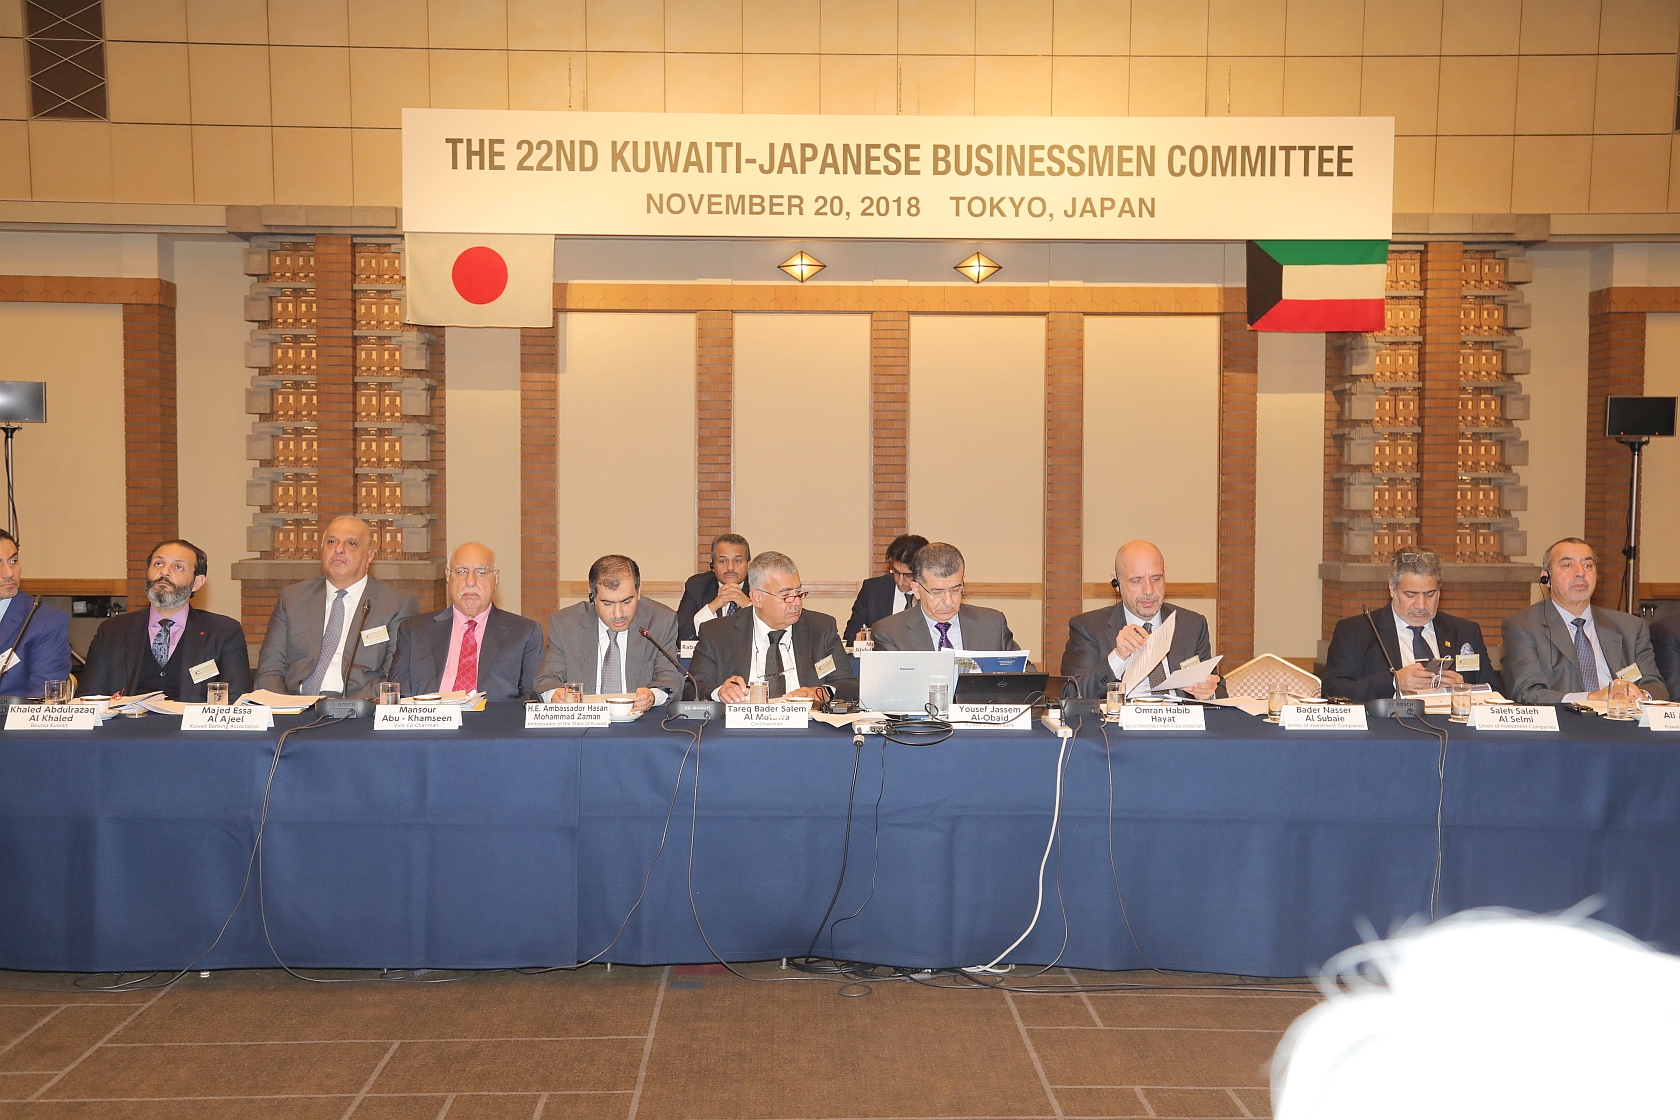 الوفد الكويتي المشارك في الاجتماع ال22 للجنة رجال الاعمال الكويتية - اليابانية